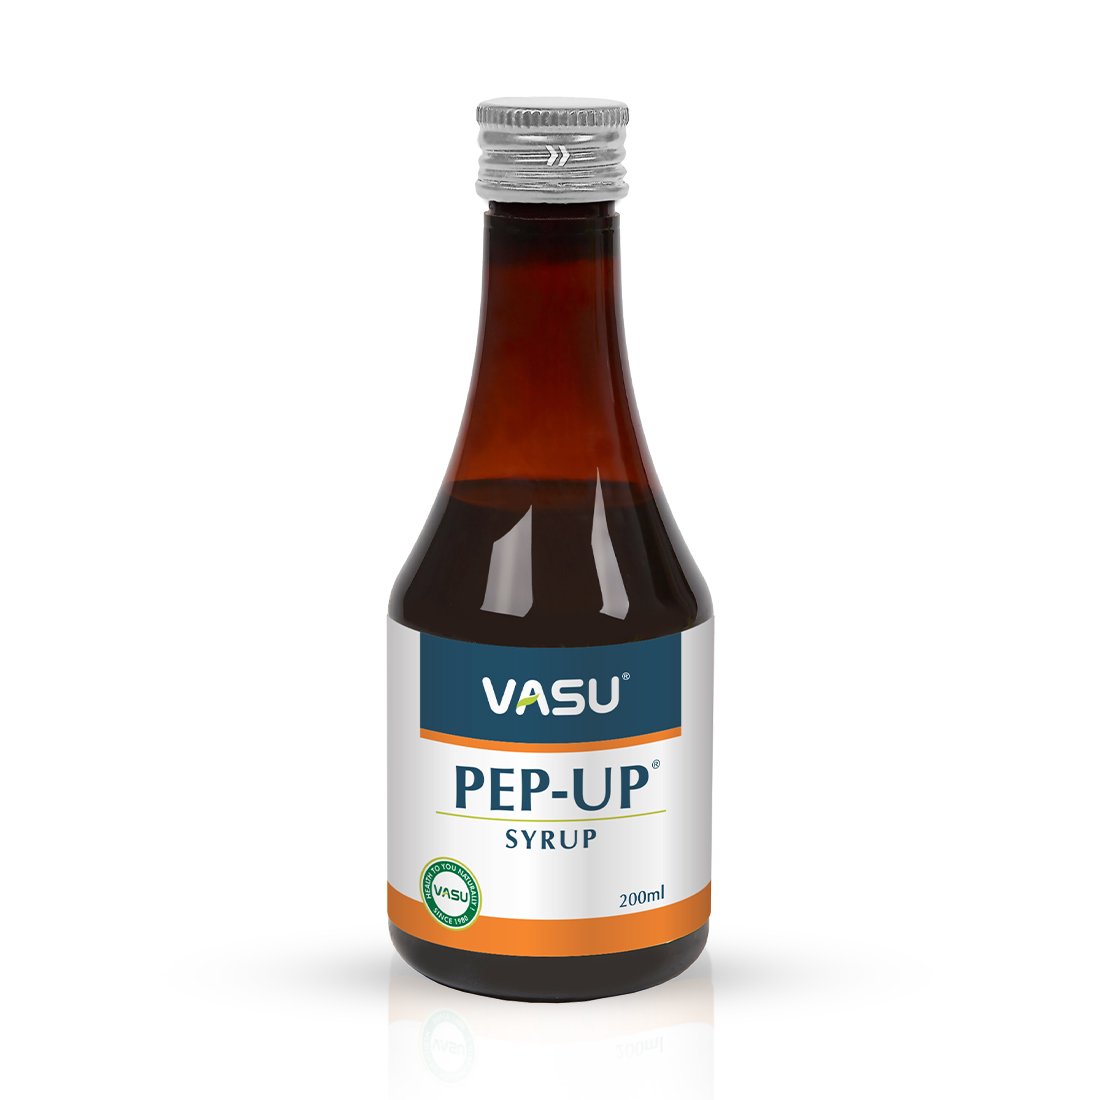 Vasu Pep-Up Syrup